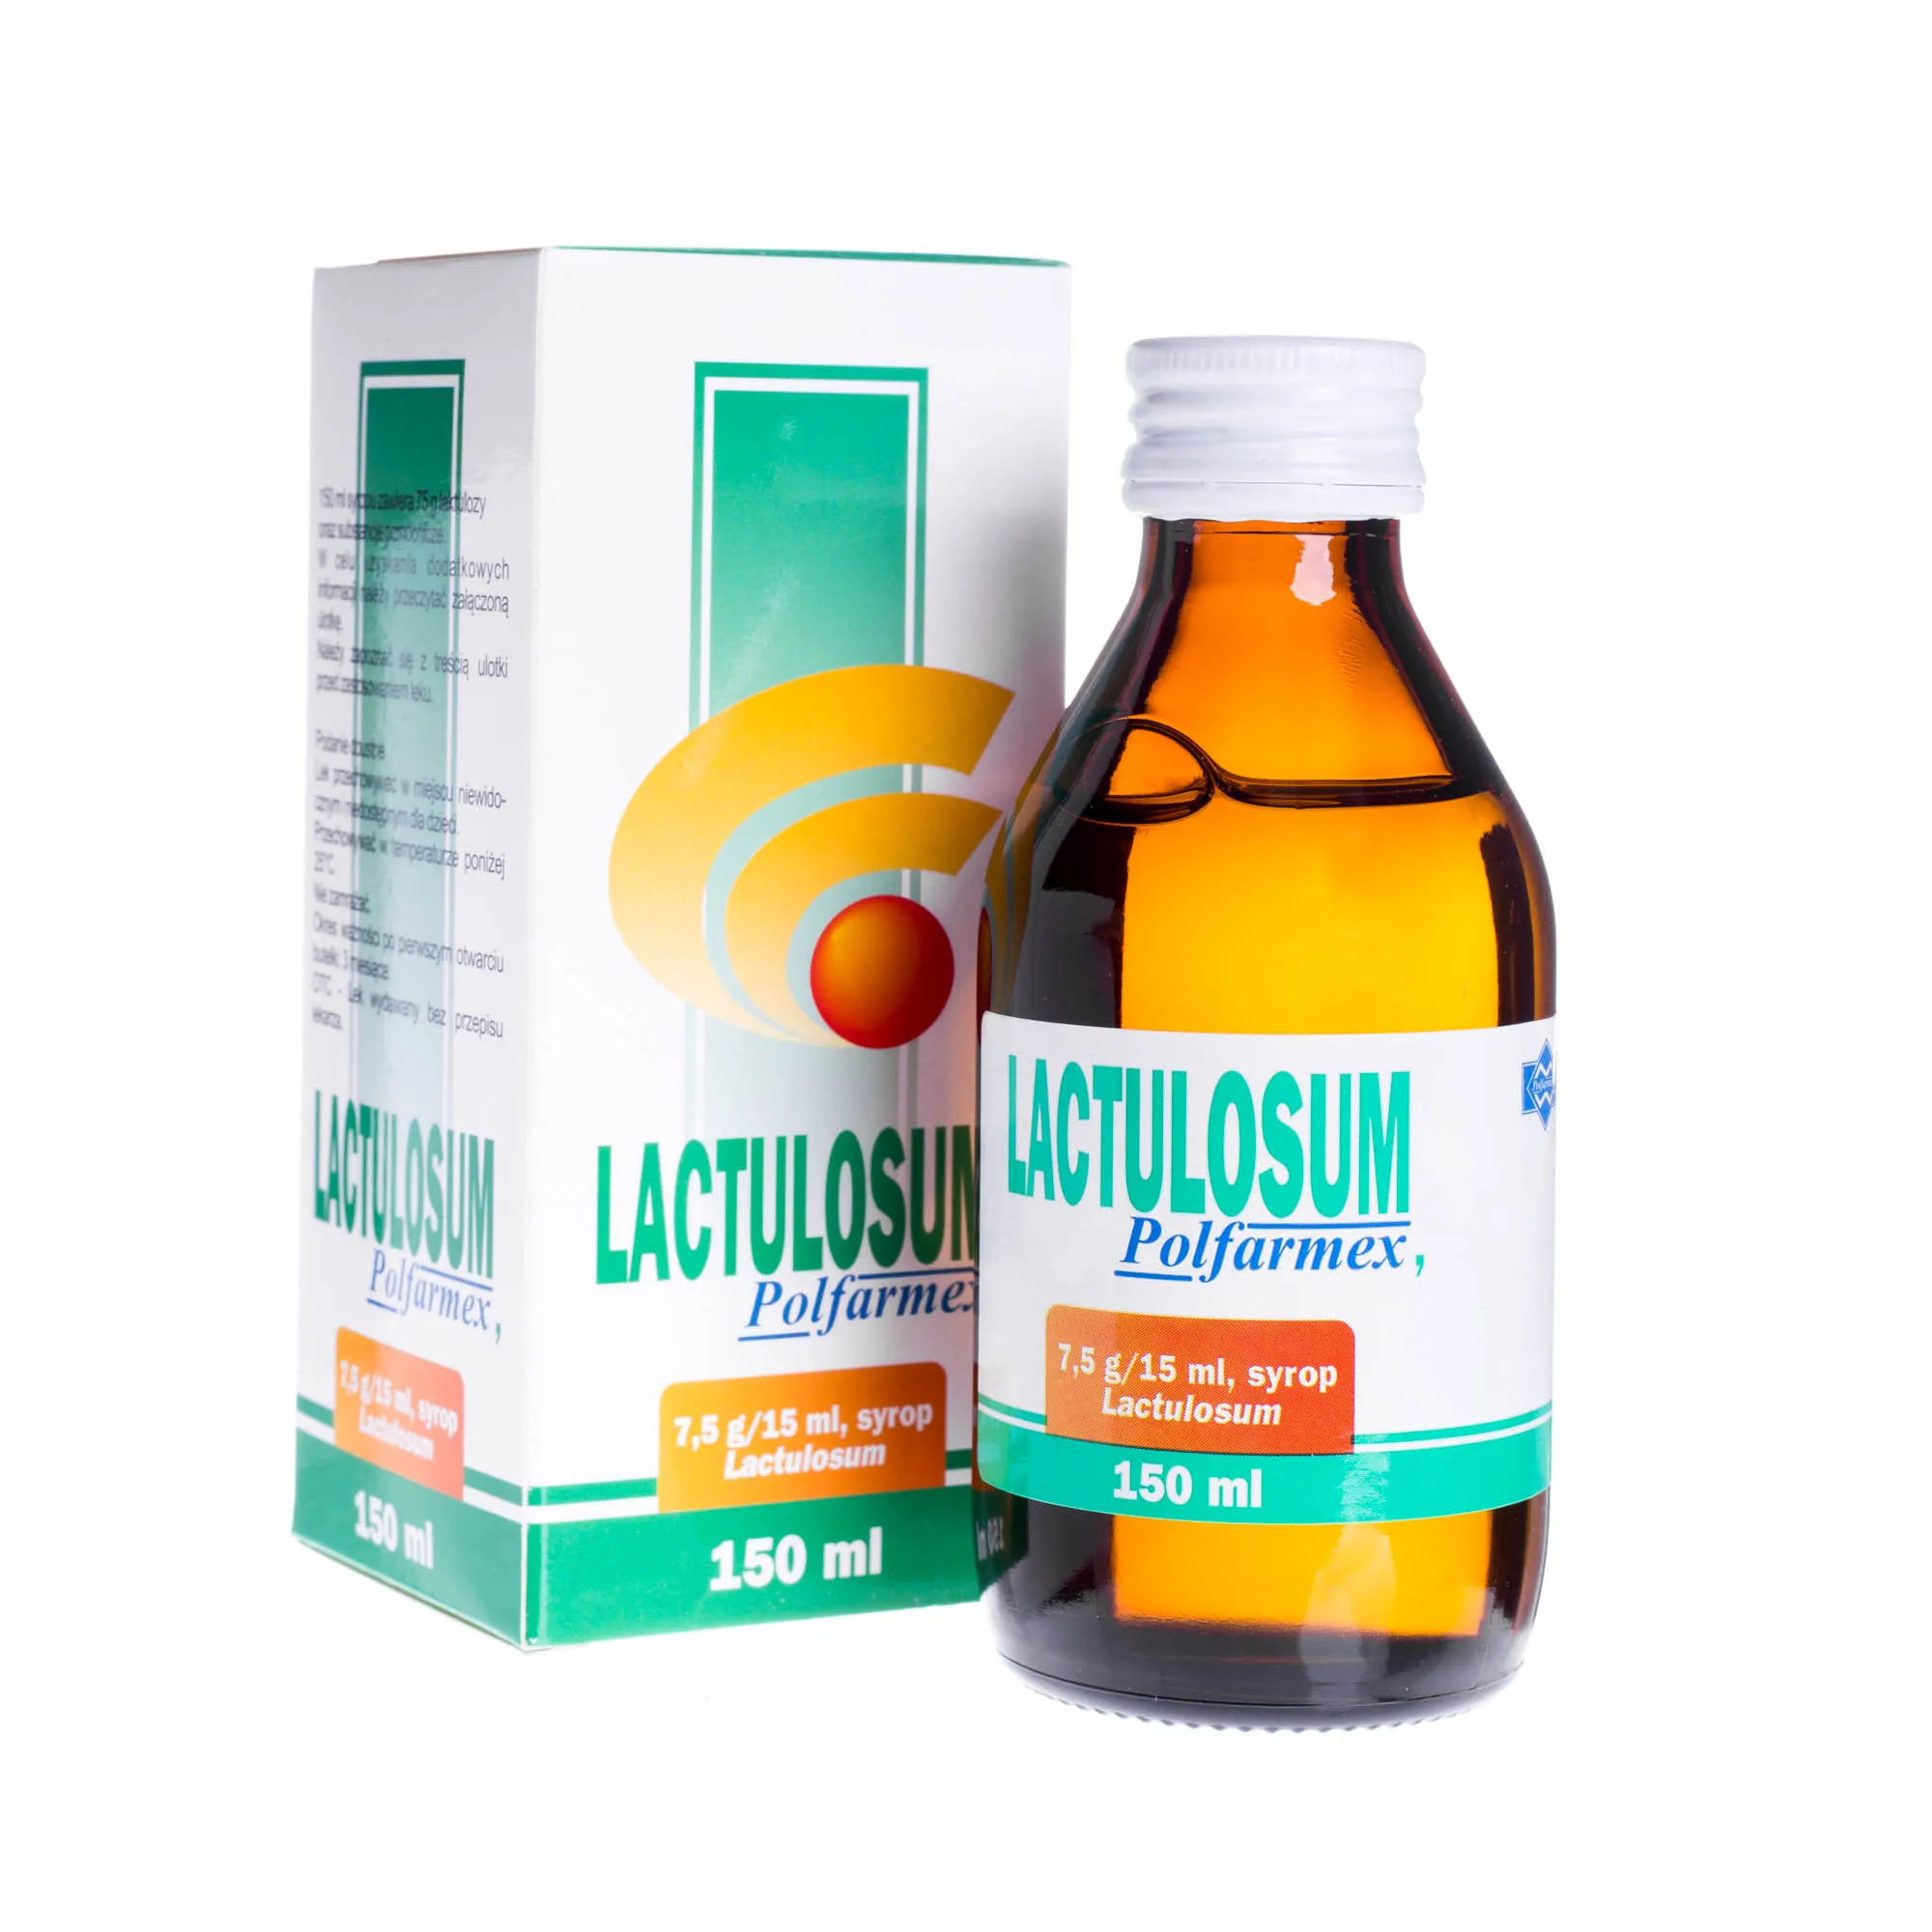 Lactulosum Polfarmex 7,5 g/15 ml - syrop 150 ml